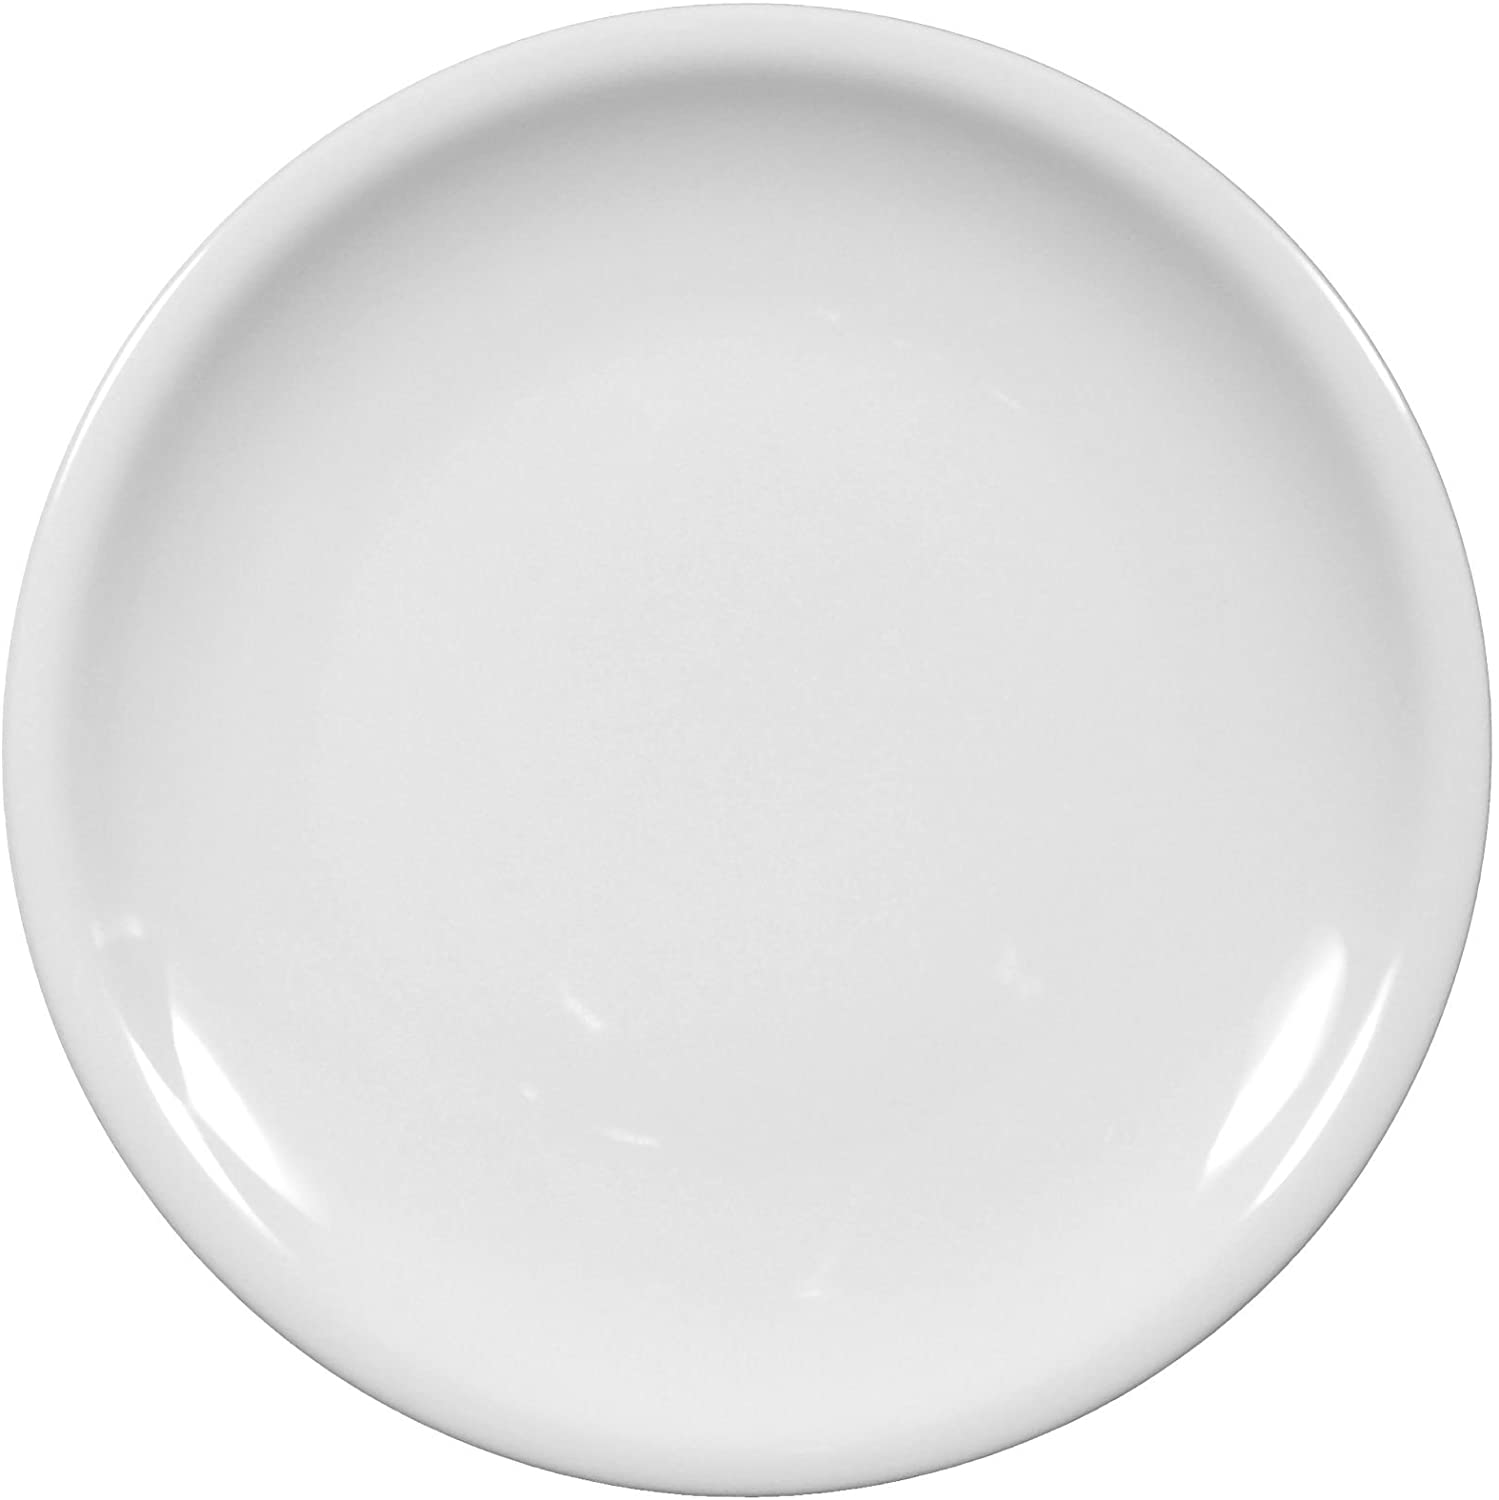 Seltmann Weiden 00007 Plate 19.3 cm Compact White Plain